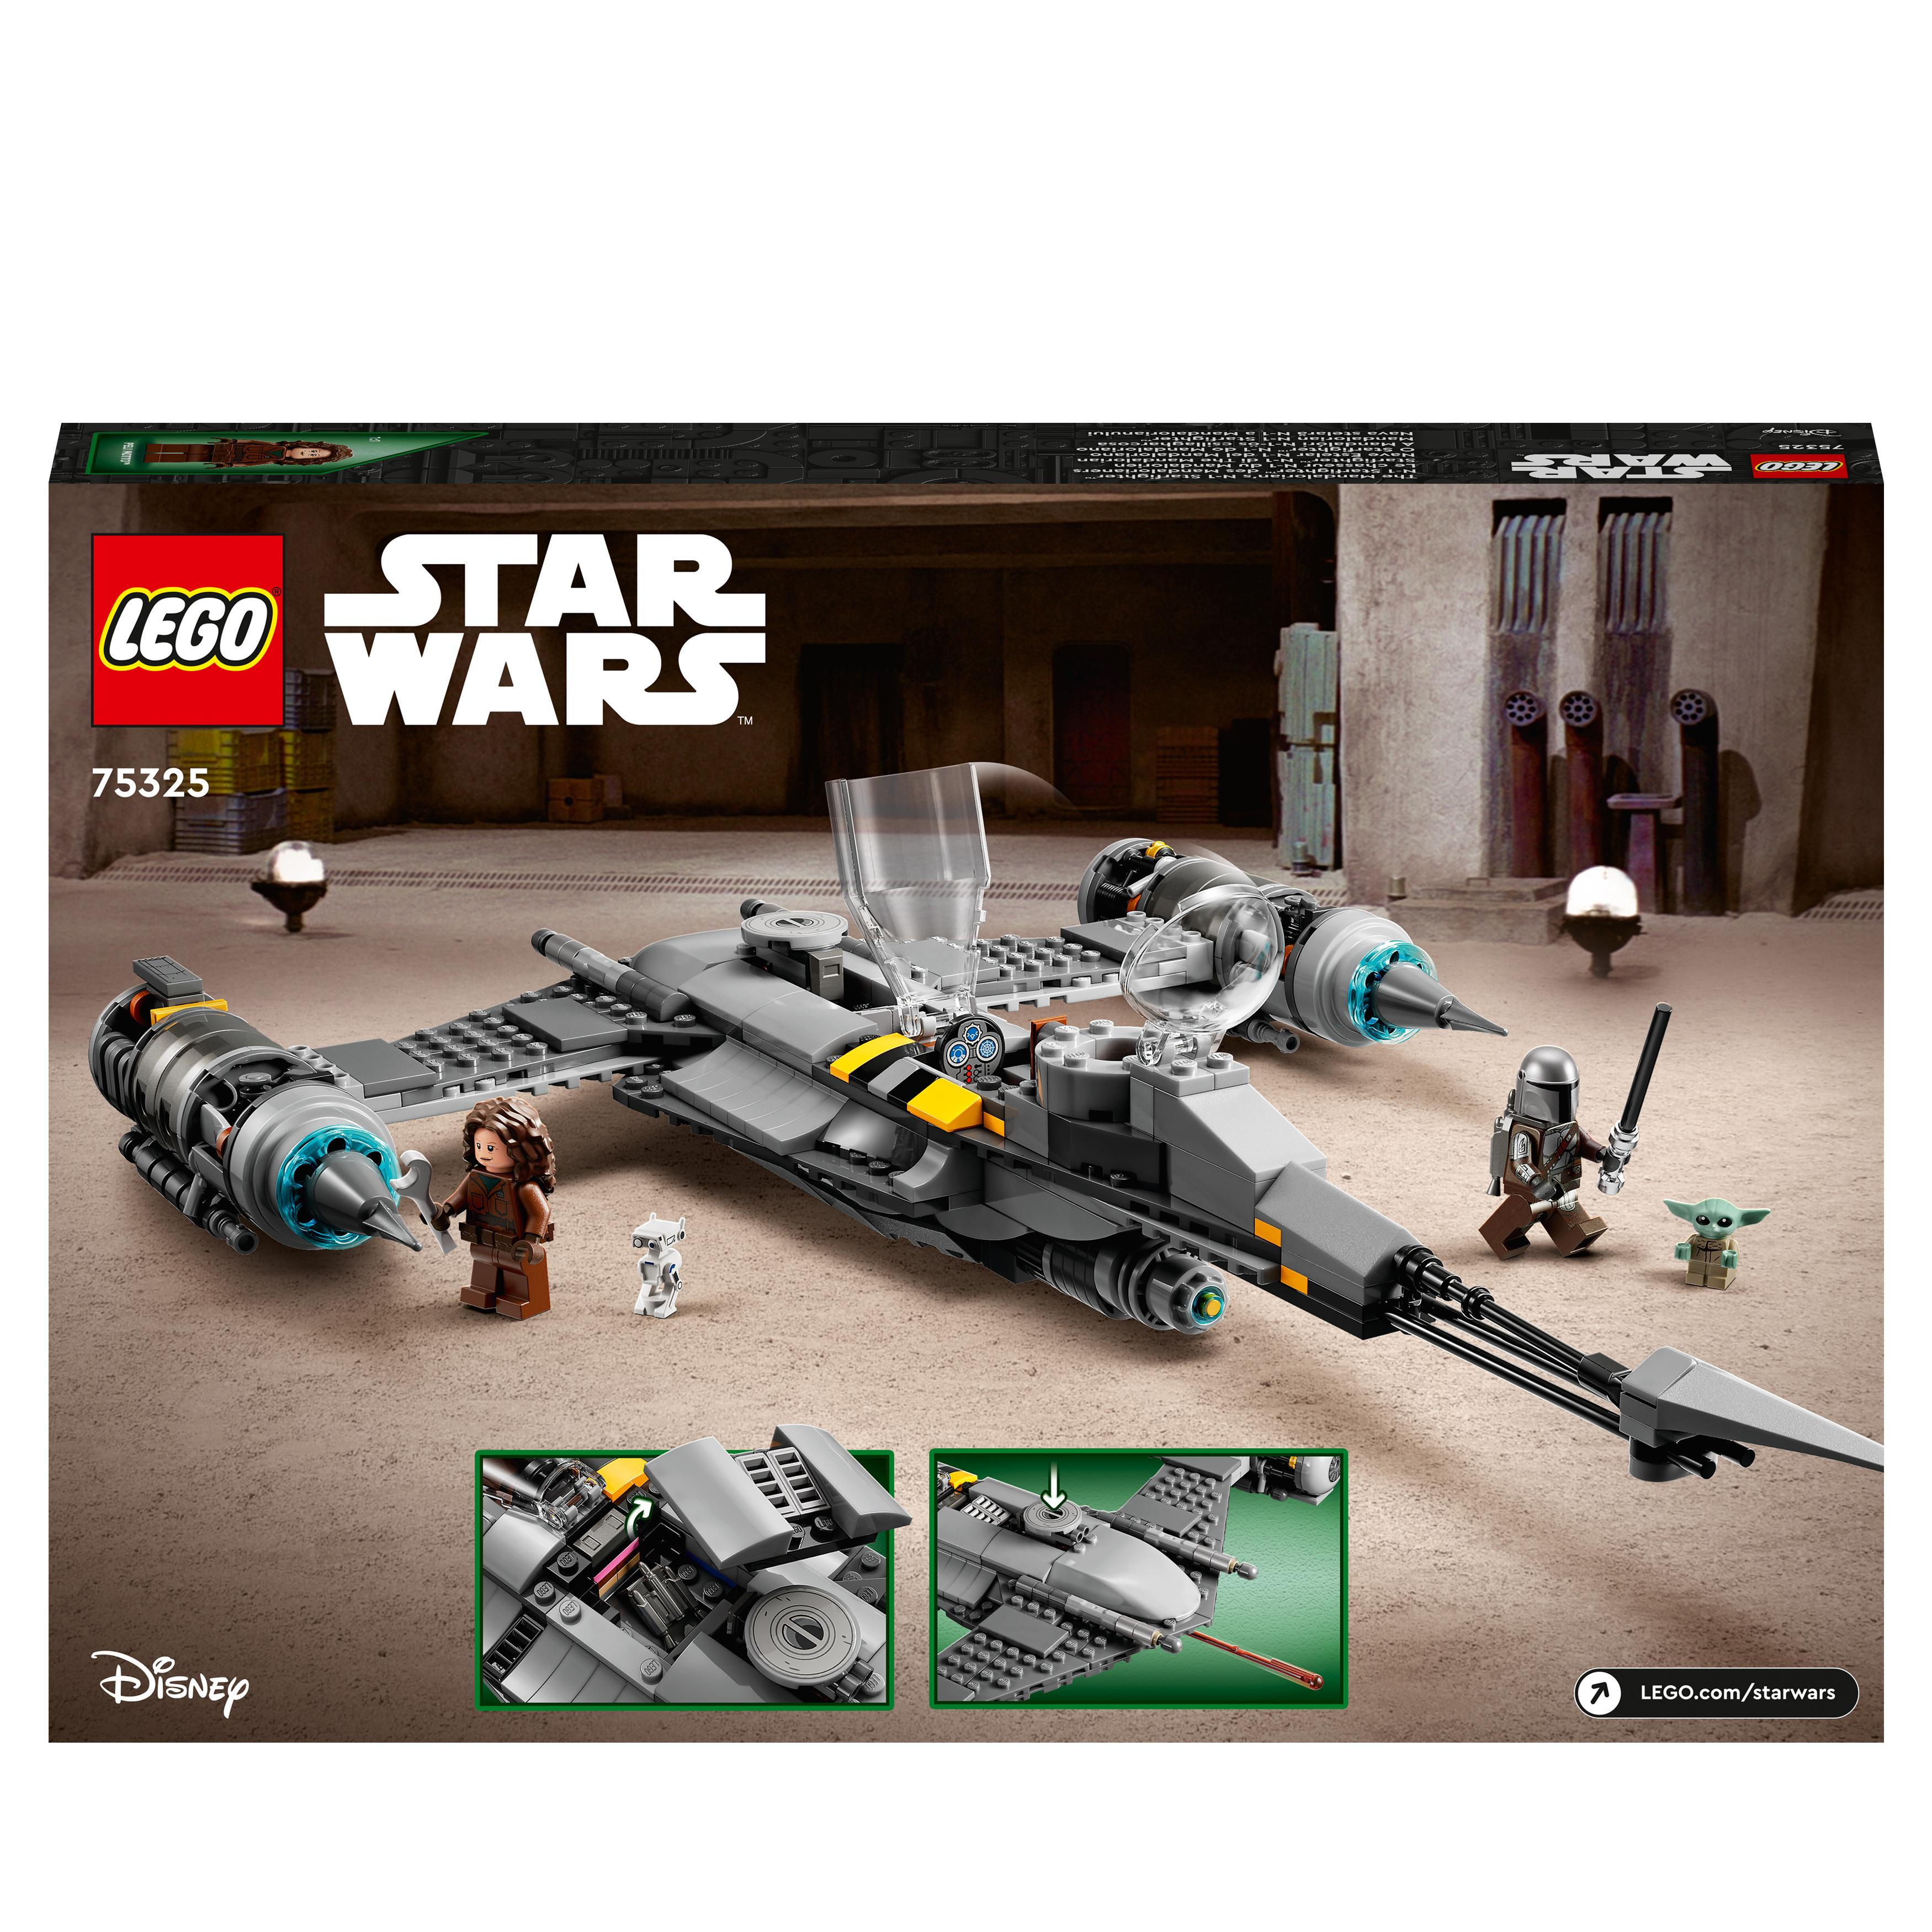 N-1 75325 des Der LEGO Star Wars Mehrfarbig Starfighter Bausatz, Mandalorianers